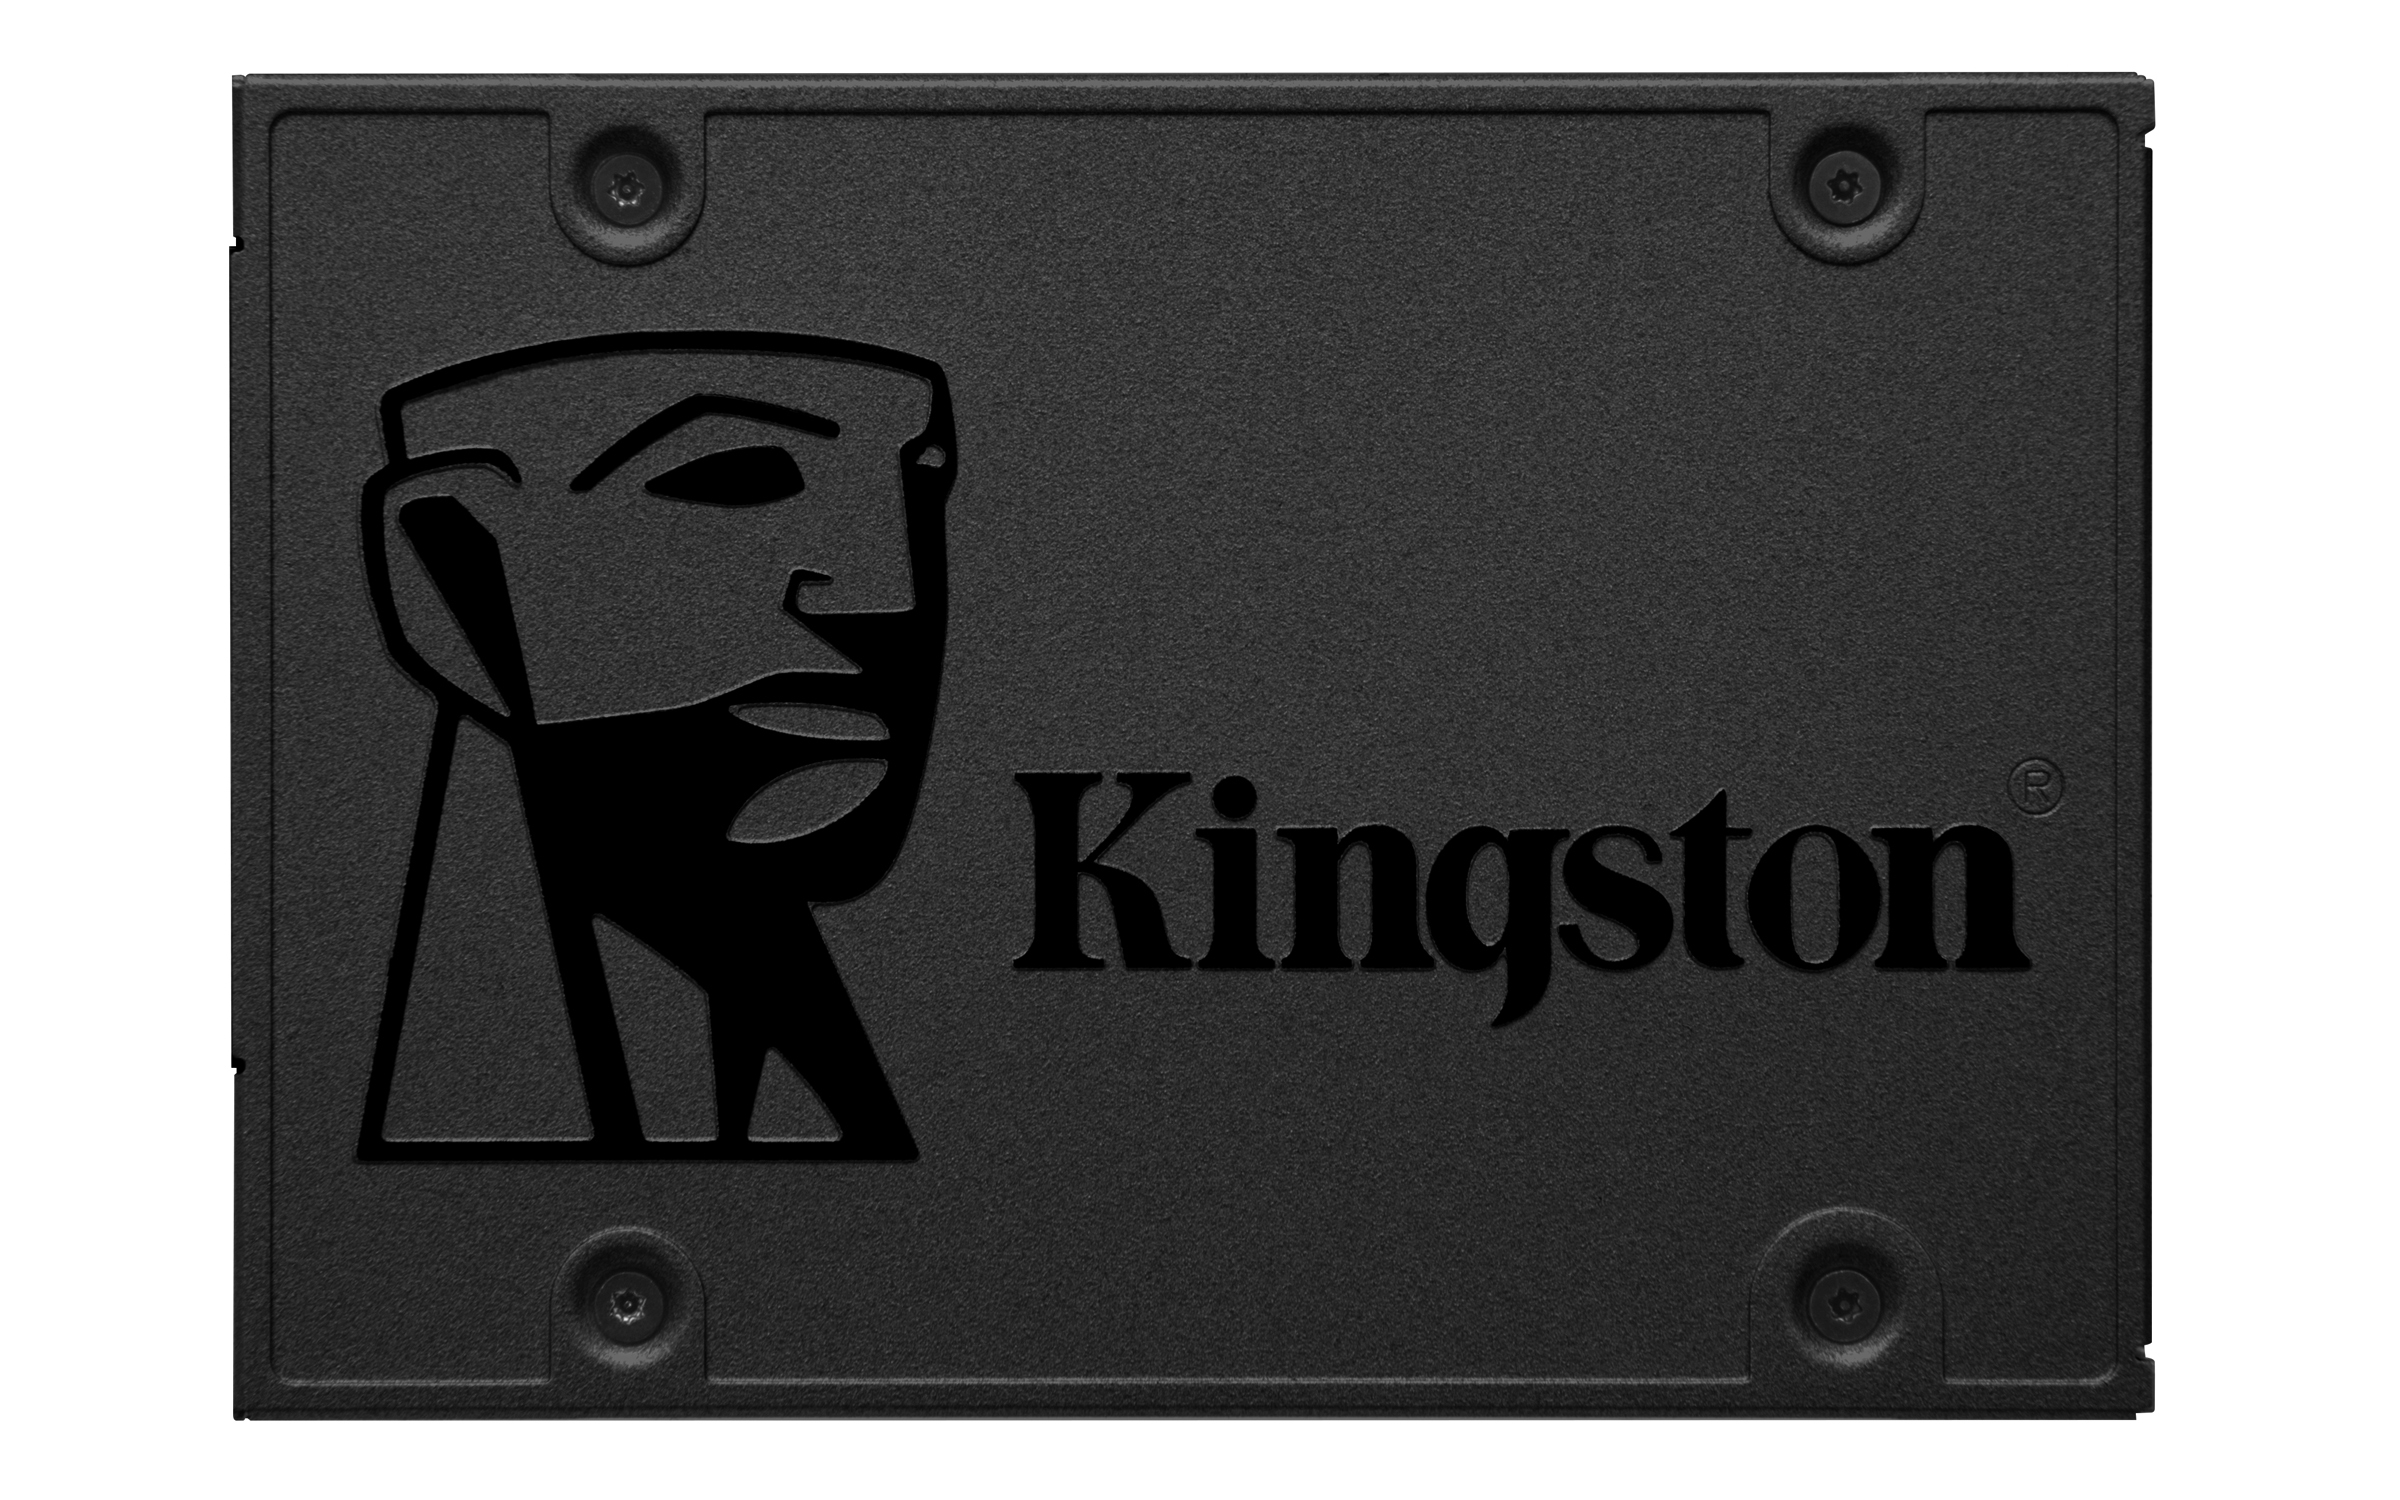 SSD 2,5 240GB SATA III A400 KINGSTON MEMORIA NAND TLC 7MM